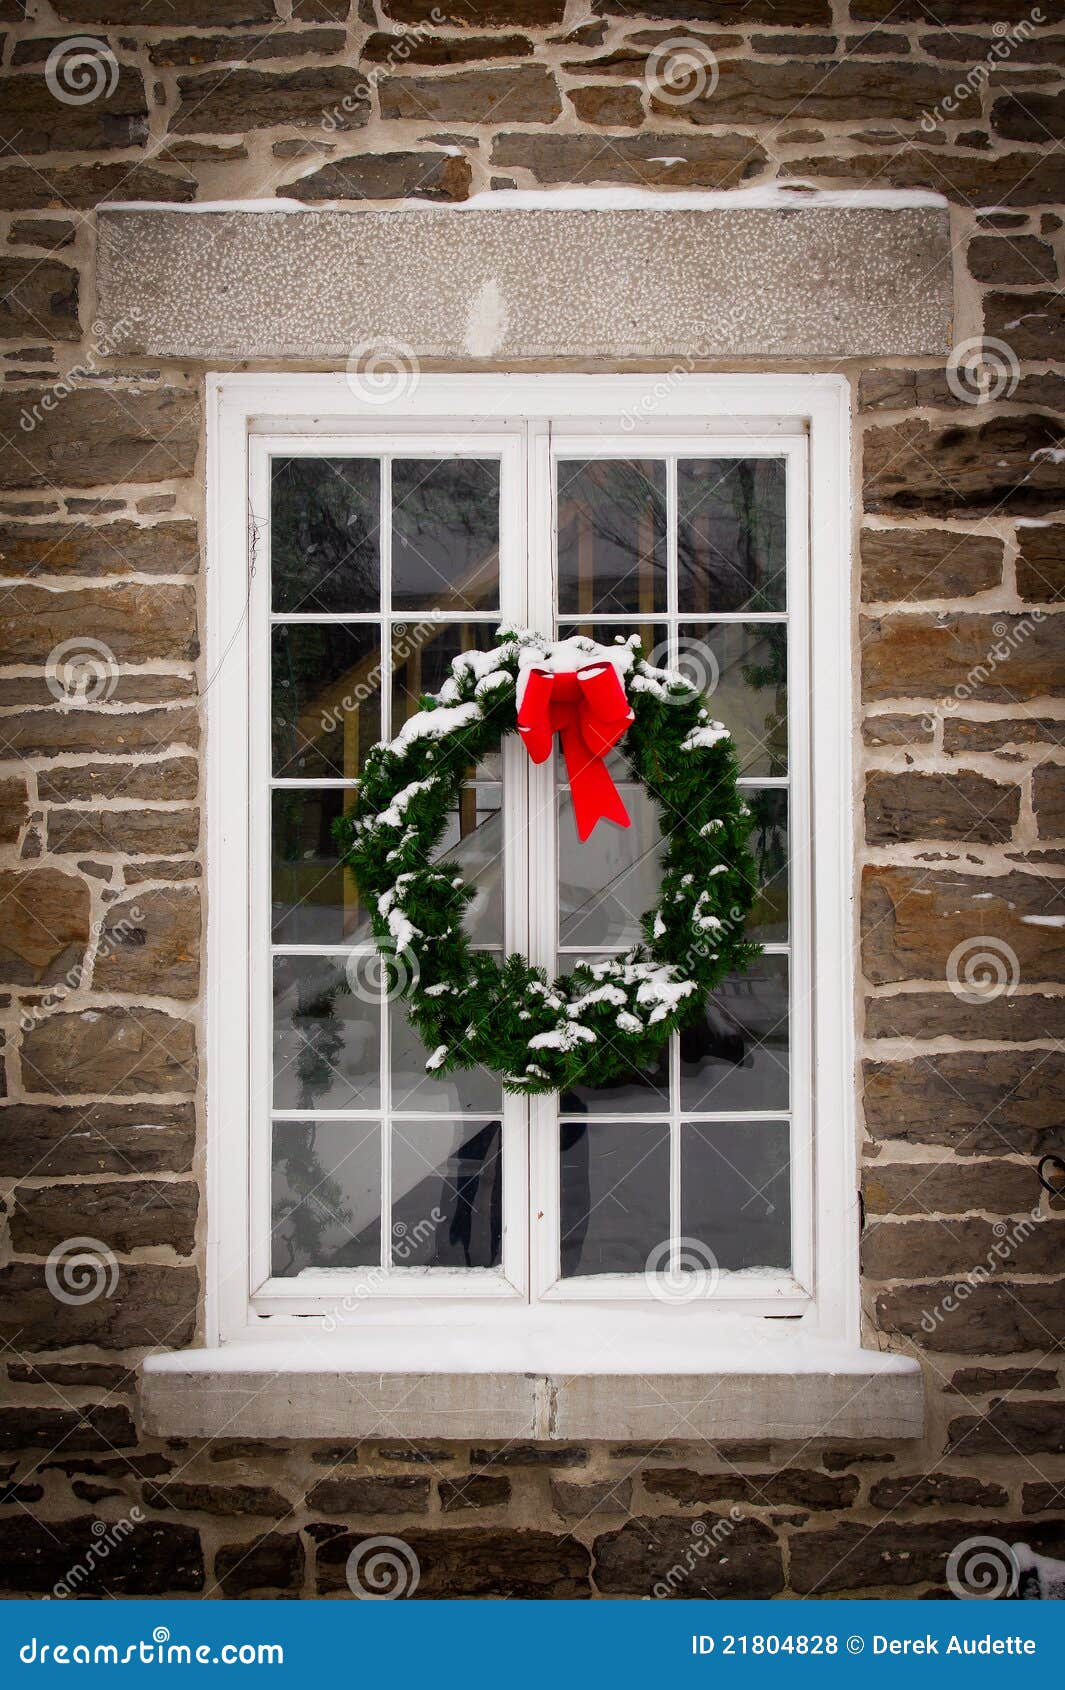 christmas wreath on old window pane